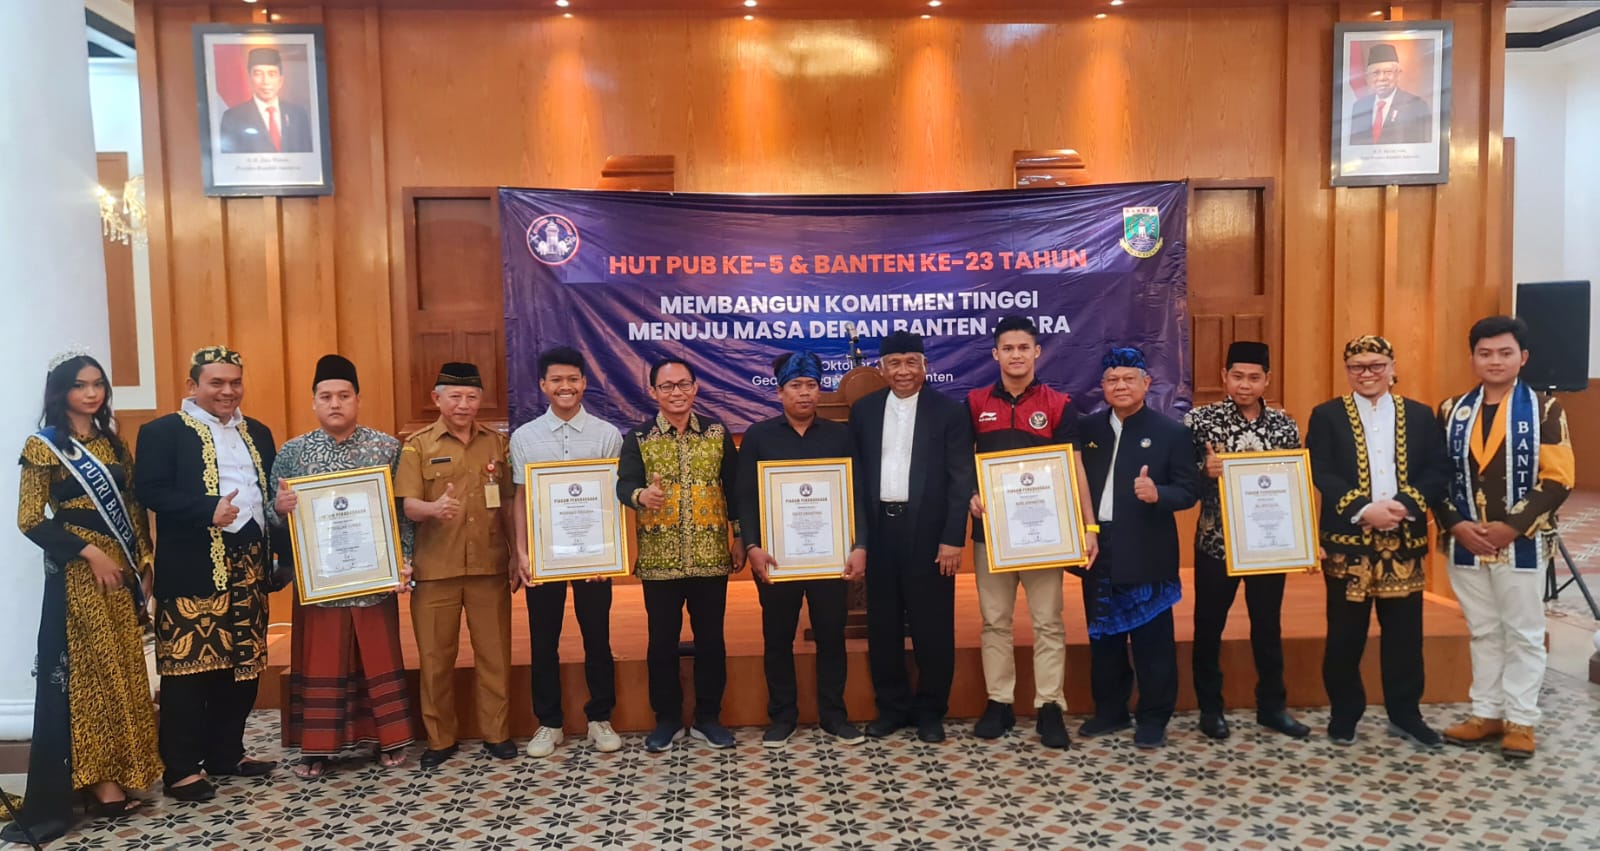 Perkumpulan Urang Banten (PUB) Rayakan HUT ke-5 di Museum Negeri Banten, Ajak Masyarakat Raih Prestasi dan Les